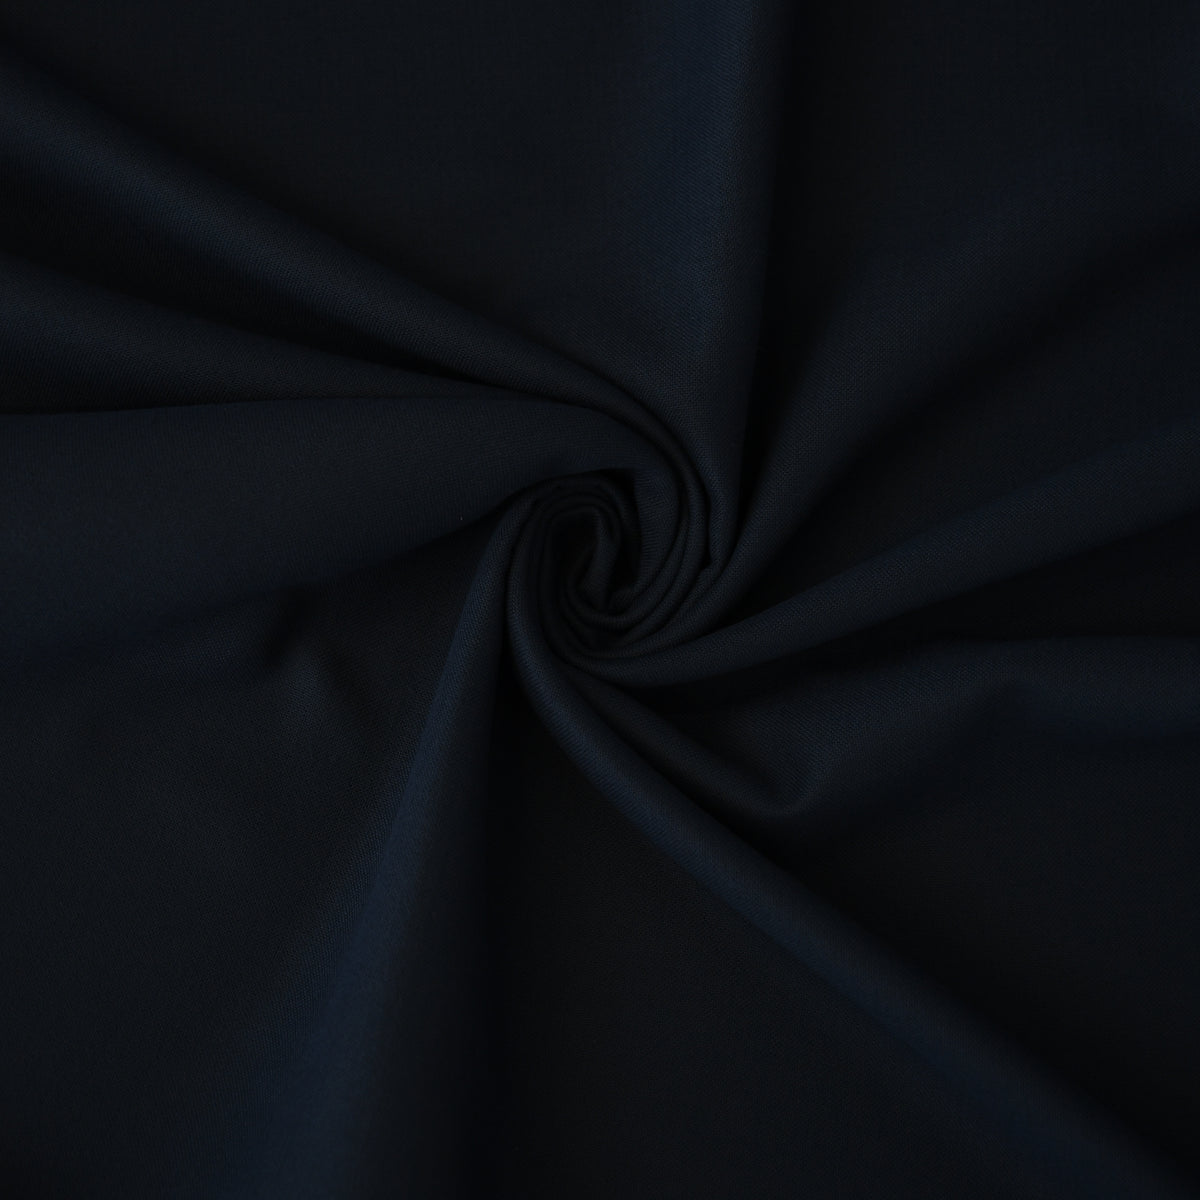 Blackout curtain dark blue myths